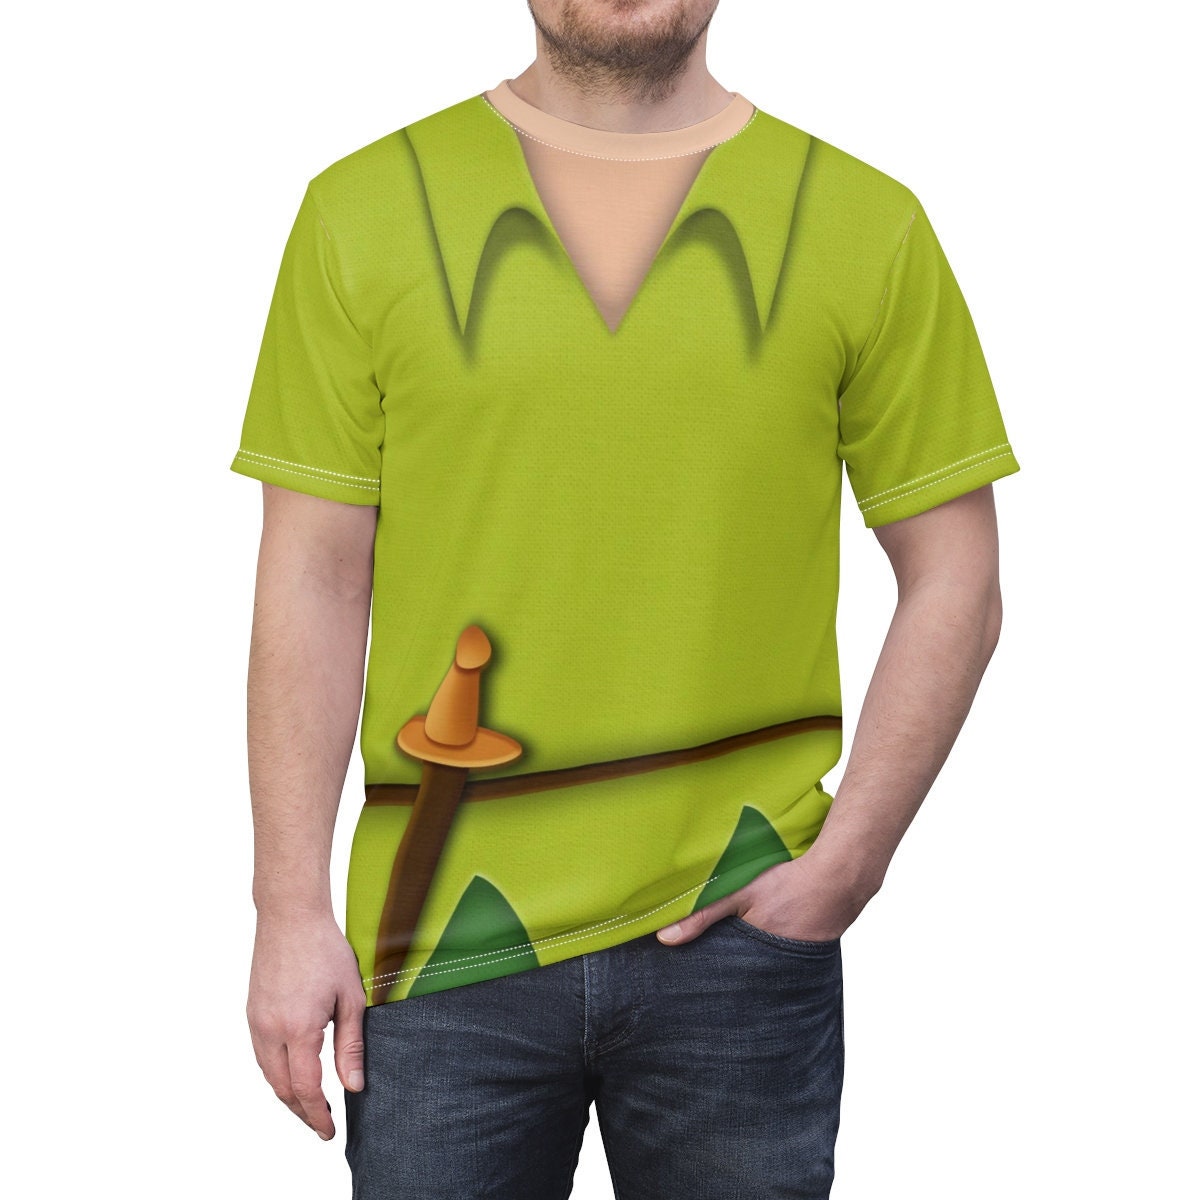 Peter Pan Unisex Shirt Peter Pan Costume Peter Pan And Tinkerbell Halloween Gift